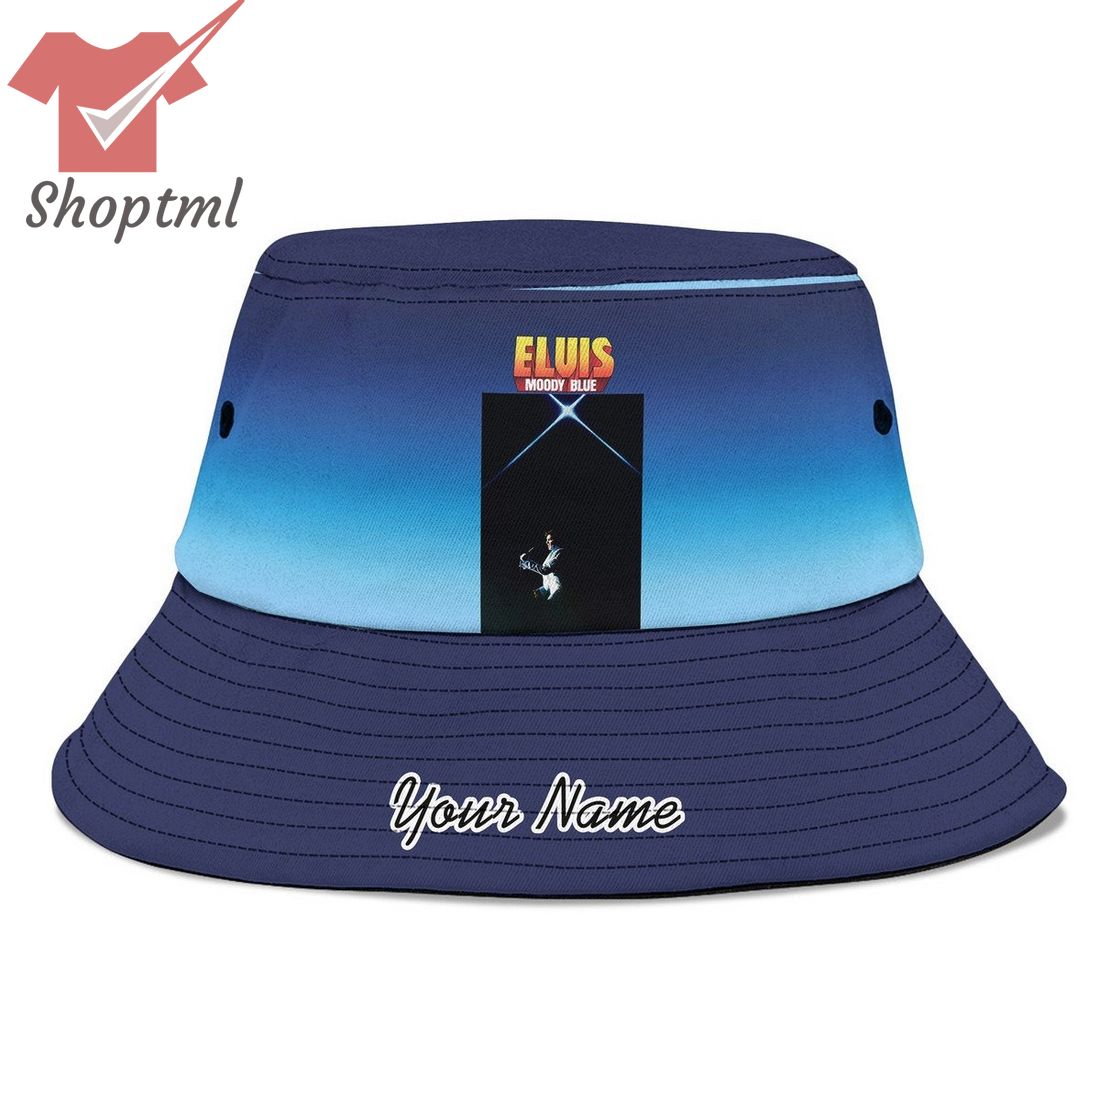 Elvis Presley moody blue custom name bucket hat